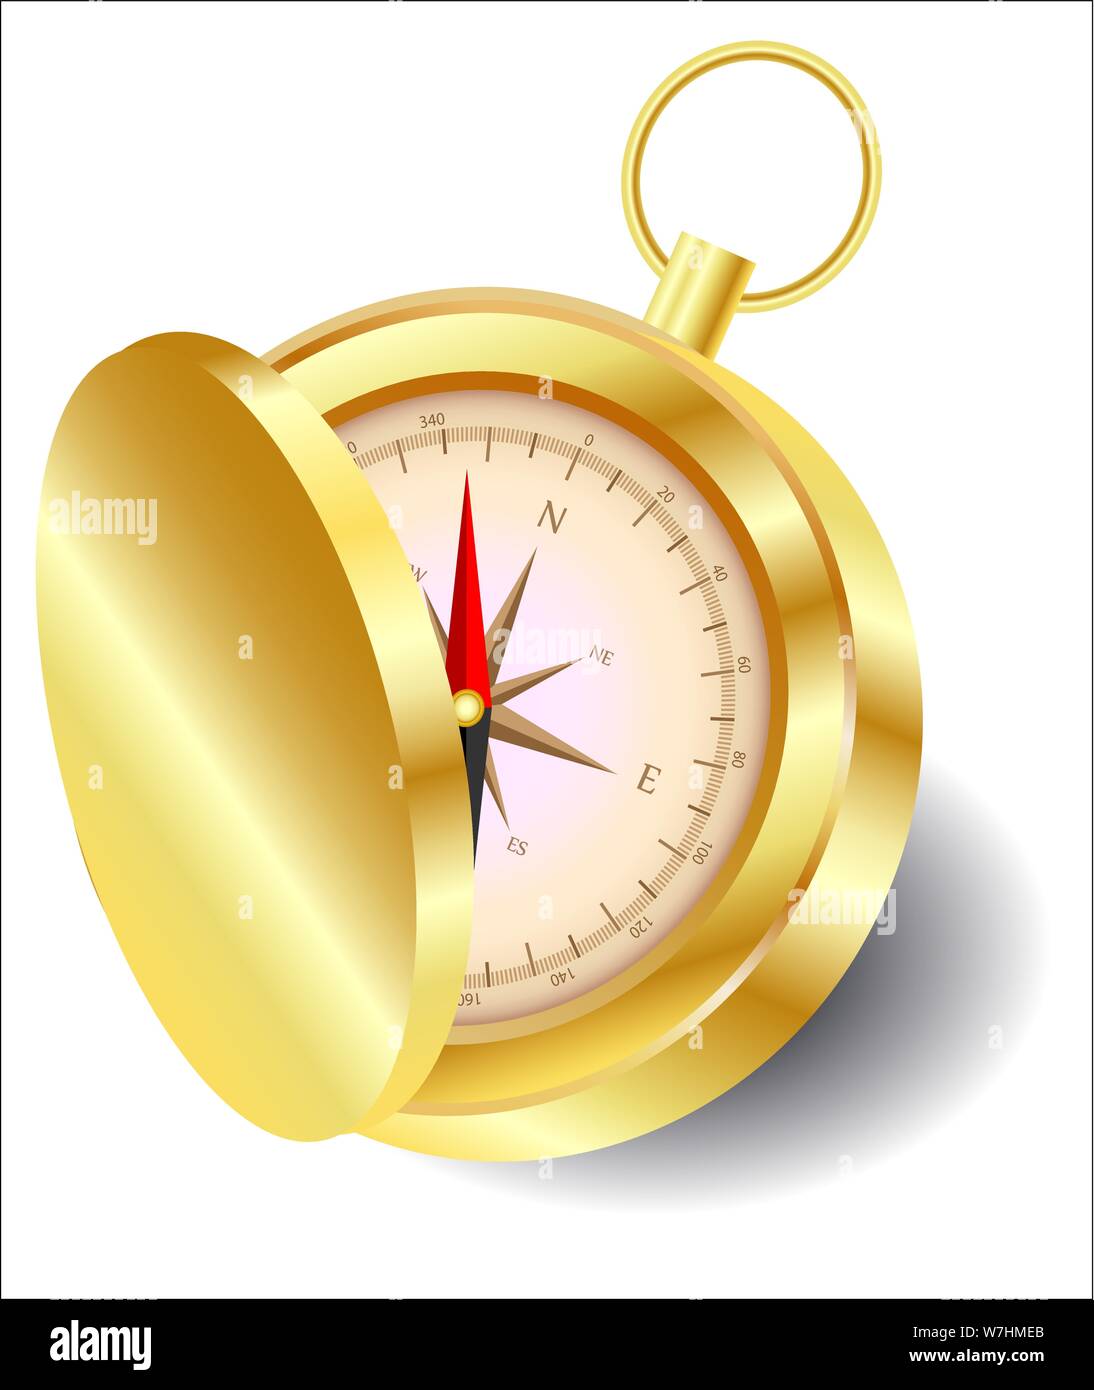 Eine goldene Kompass mit Deckel mit einem Wind Rose auf einer goldenen  Kette. Norden, Süden, Westen, Osten, Geographie, Koordinaten, Richtungen  Stock-Vektorgrafik - Alamy